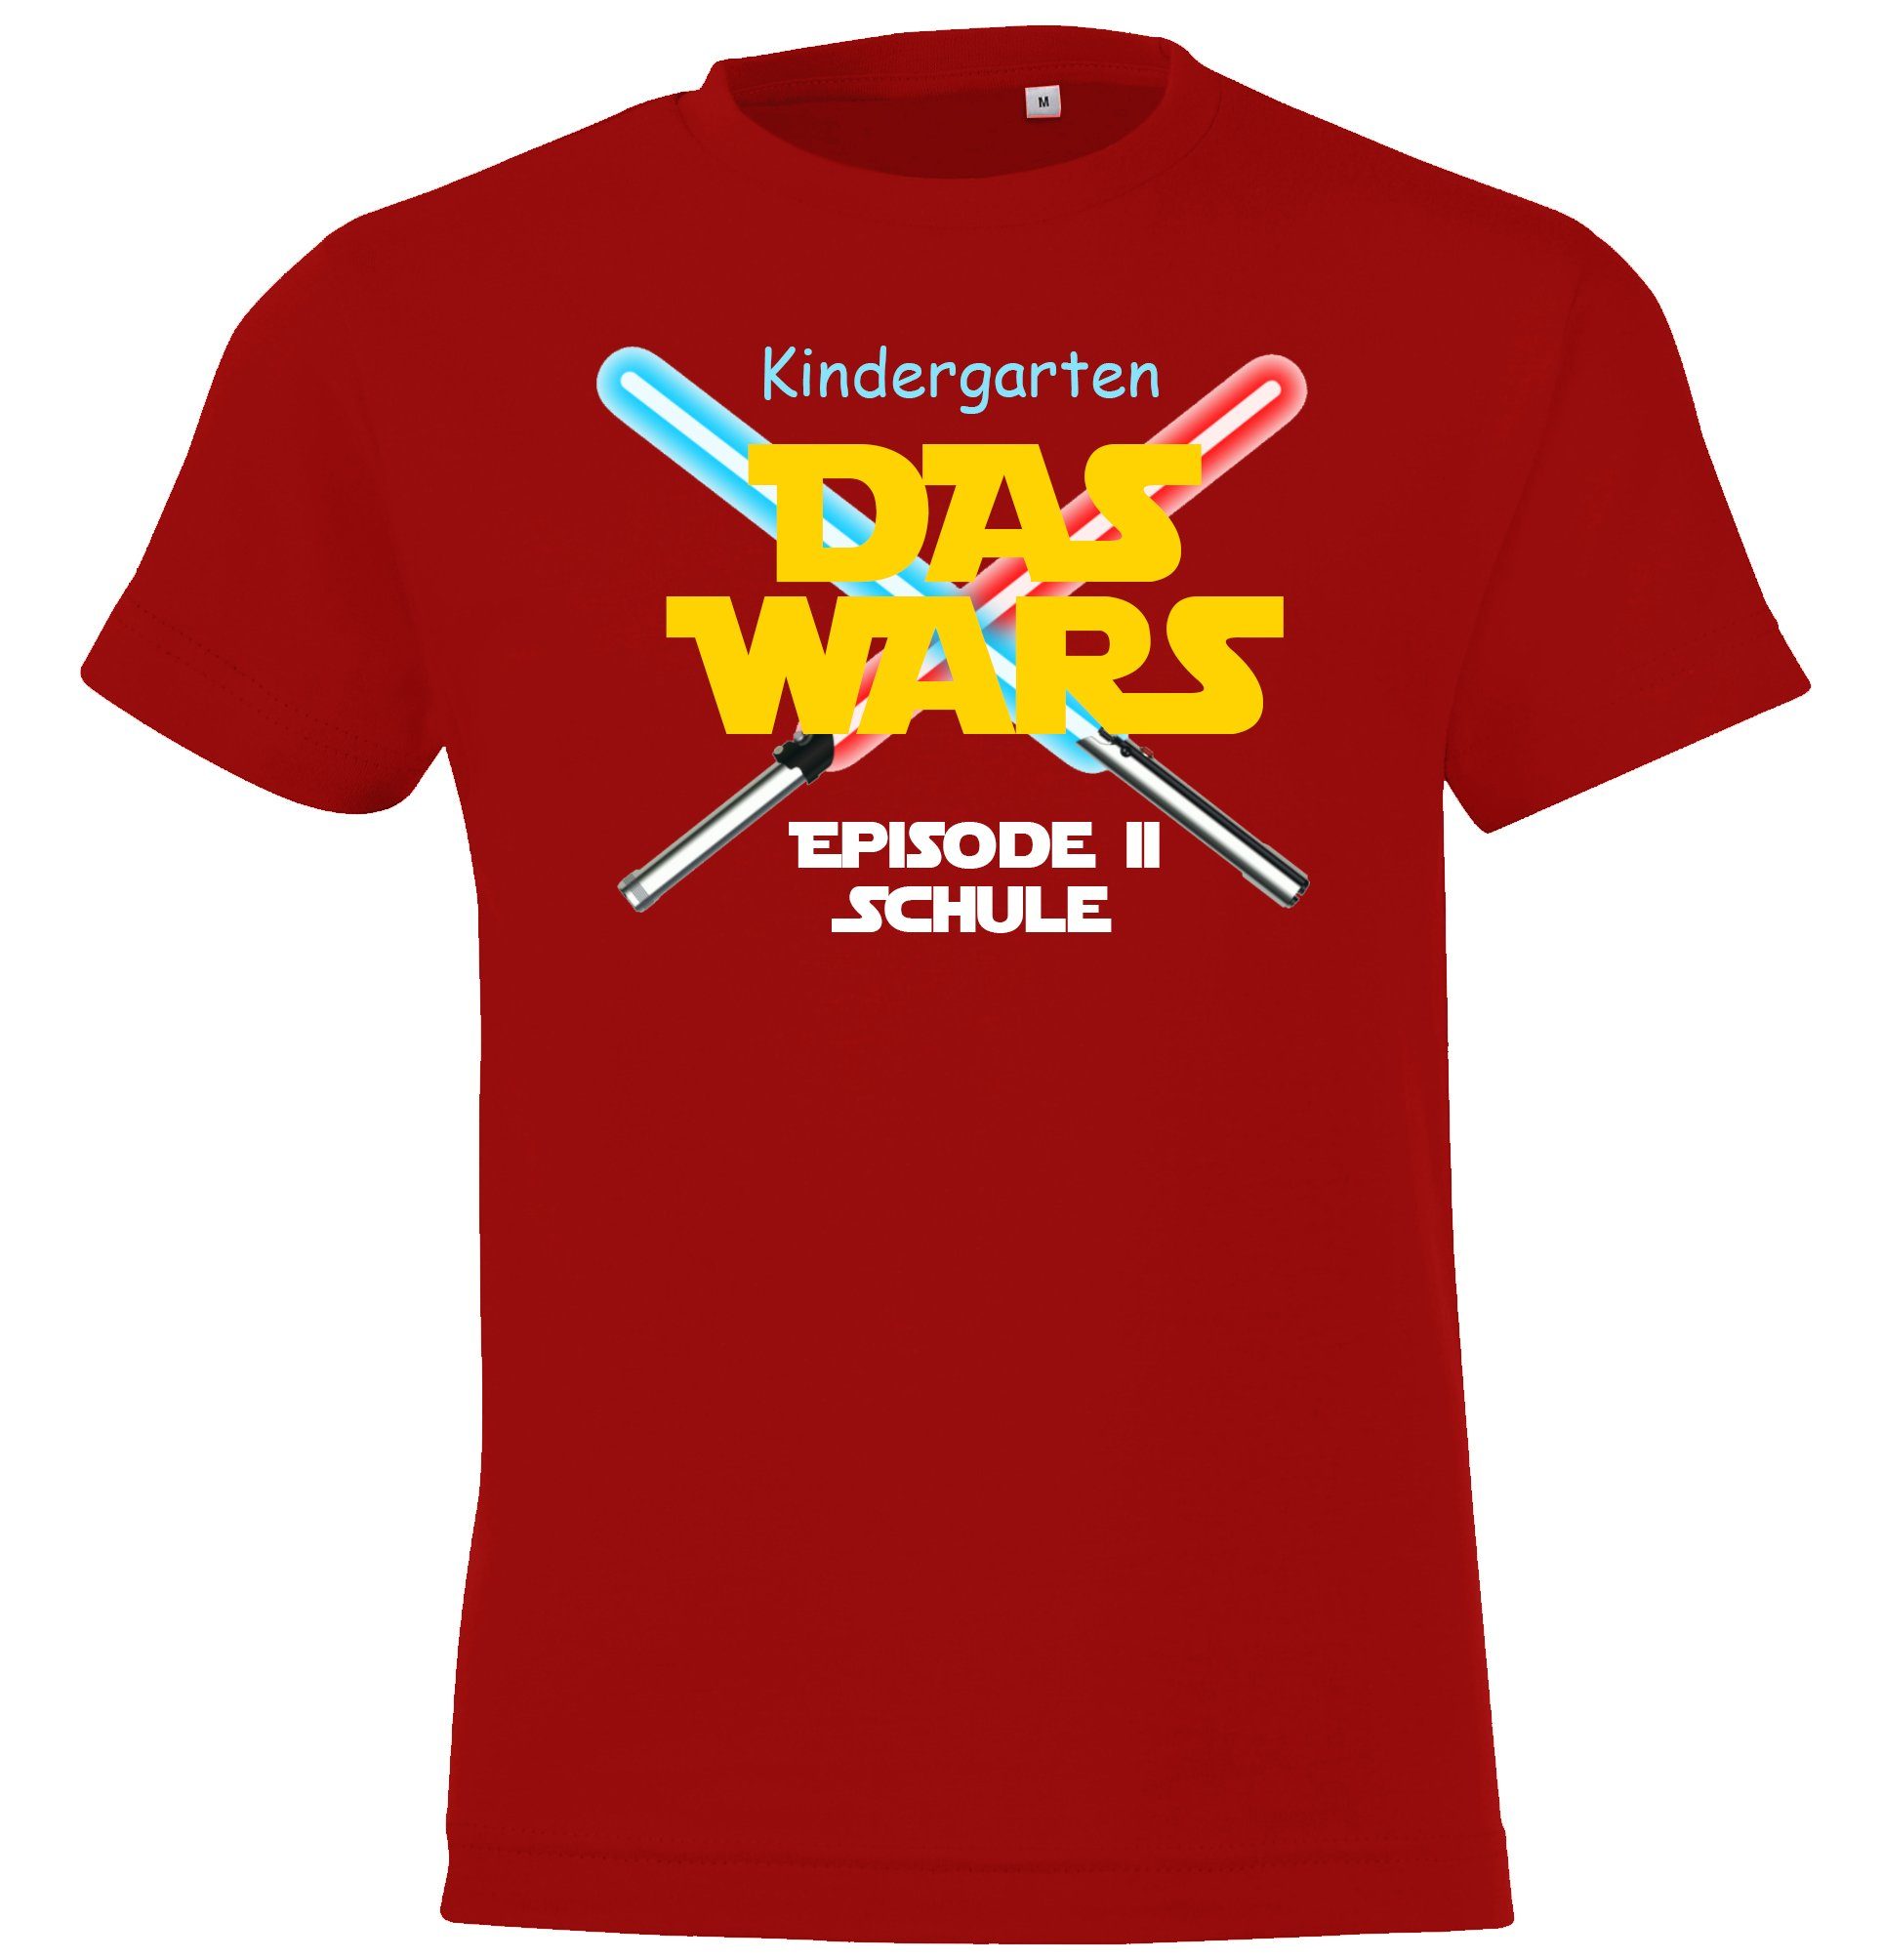 mit T-Shirt Rot Youth Wars lustigem Einschulungs Shirt Designz Motiv Kinder Kindergarten Das